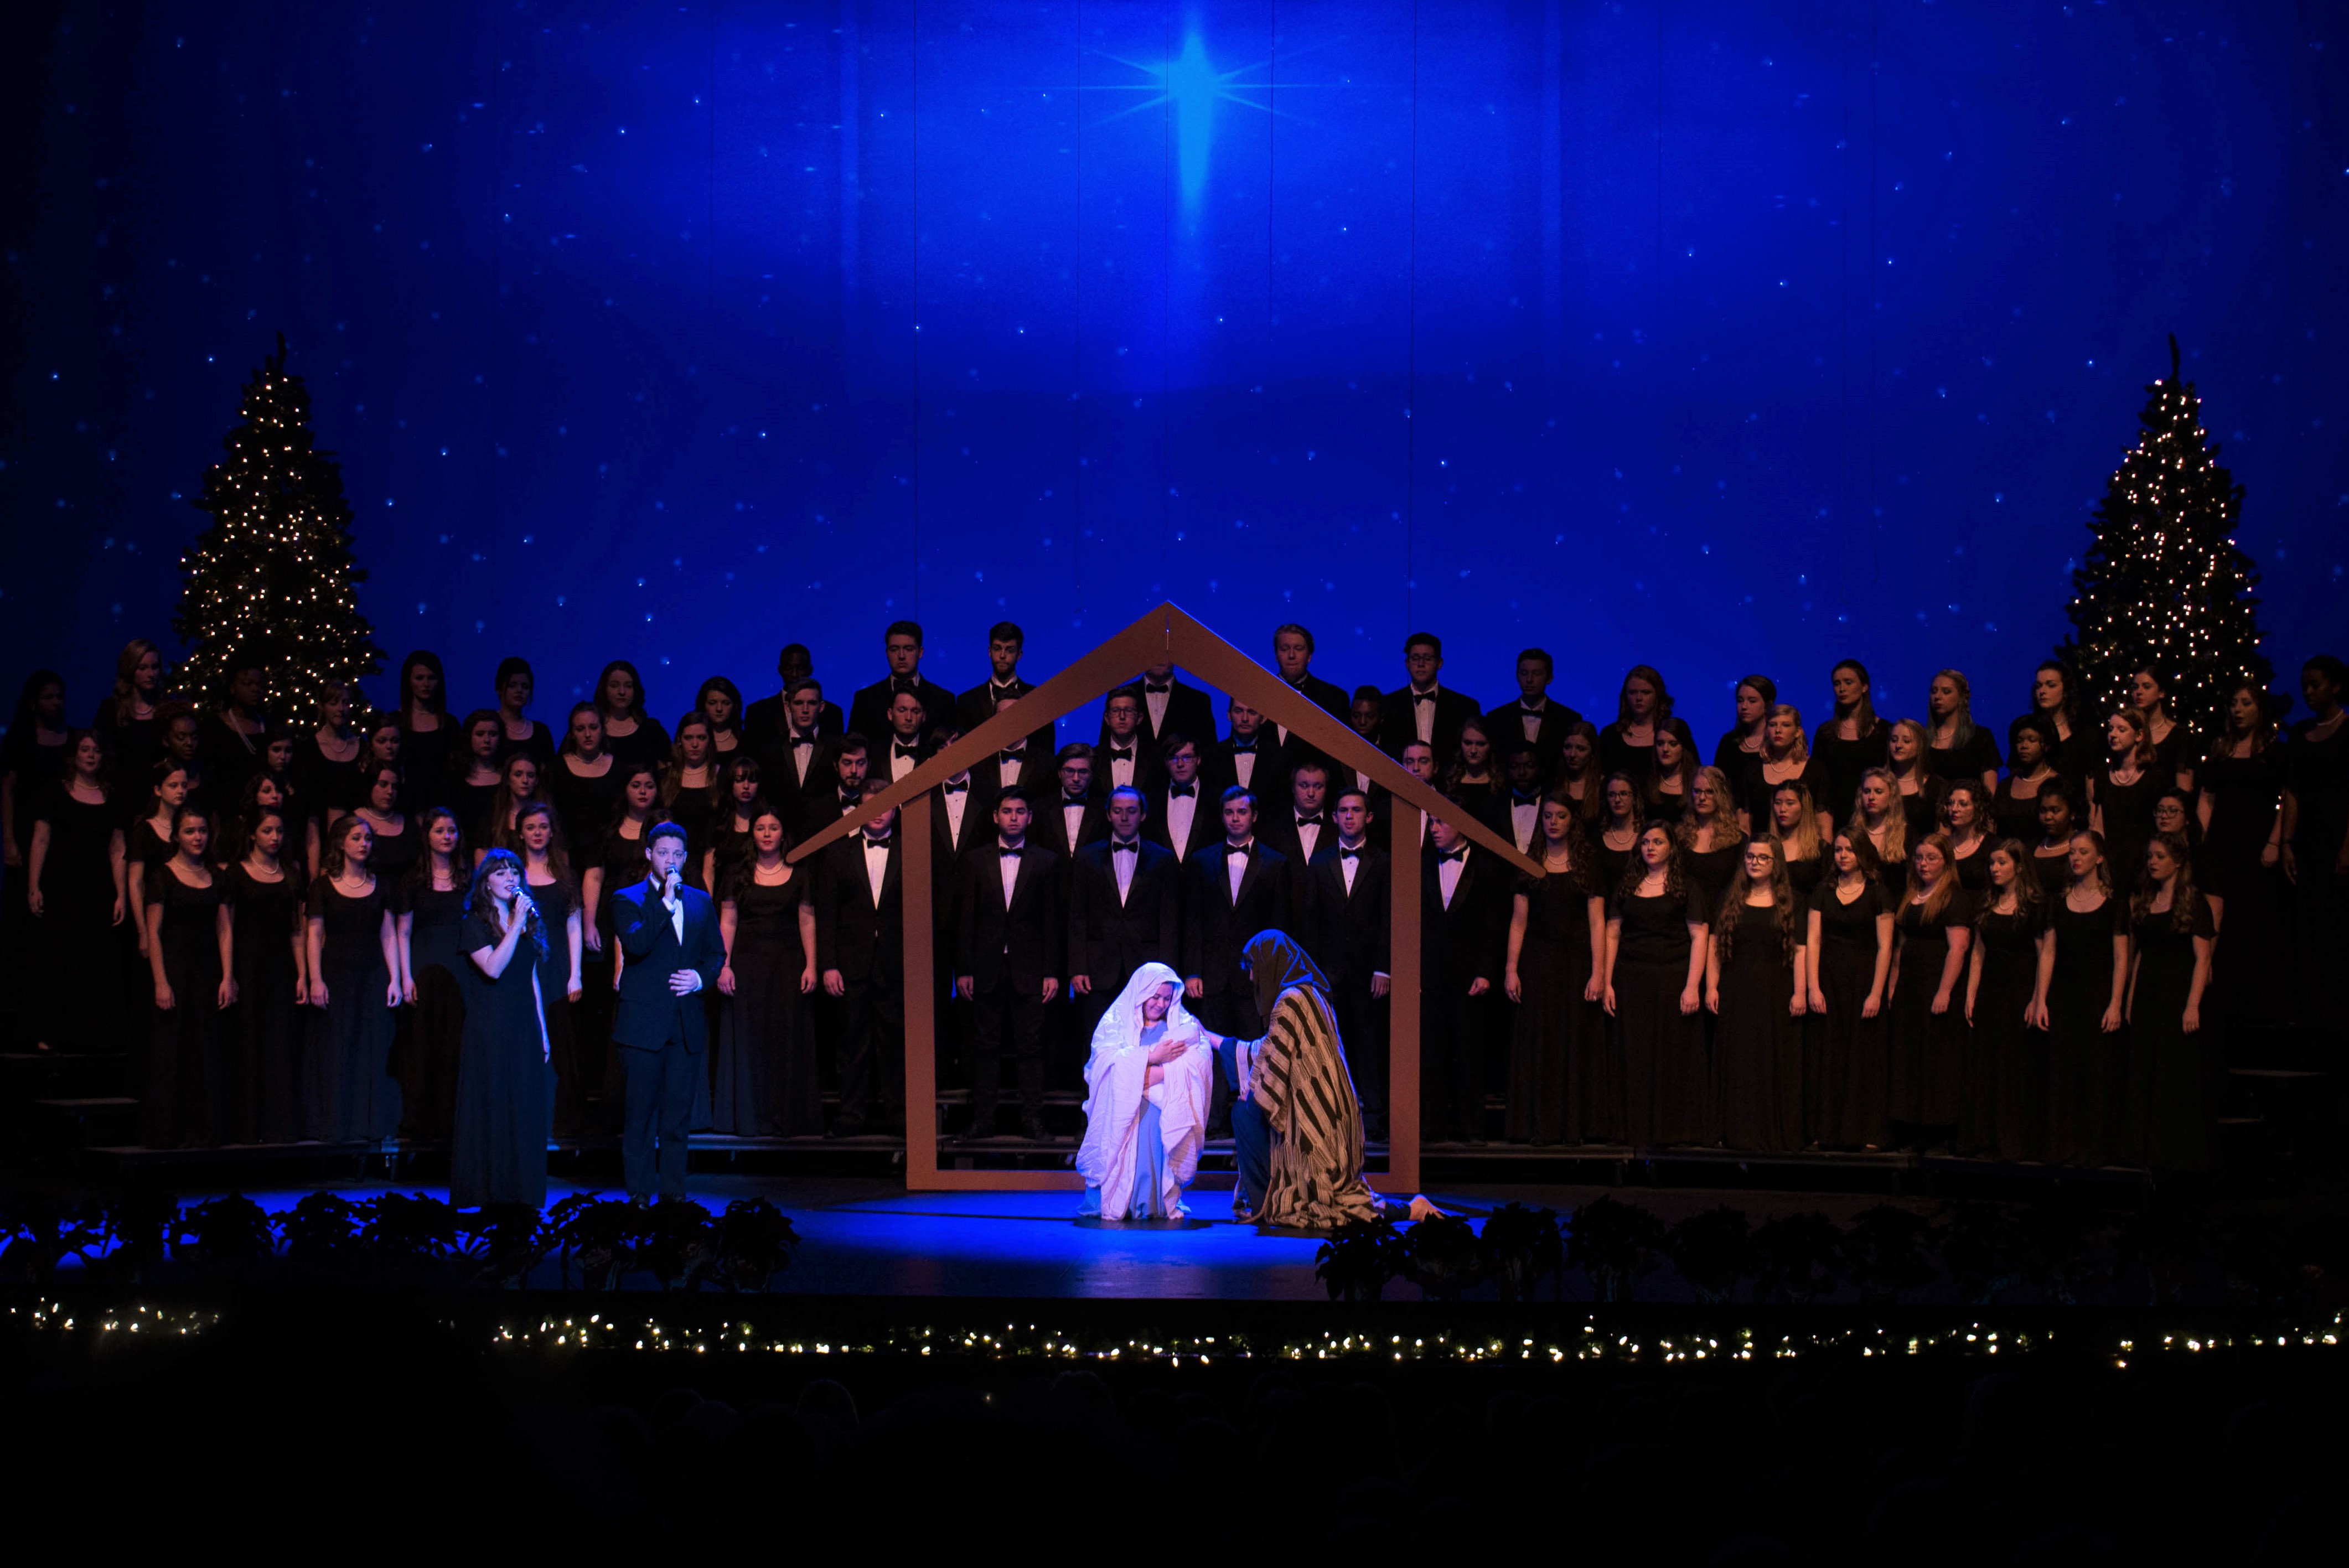 Students reenact Jesus' birth as the concert choir sings